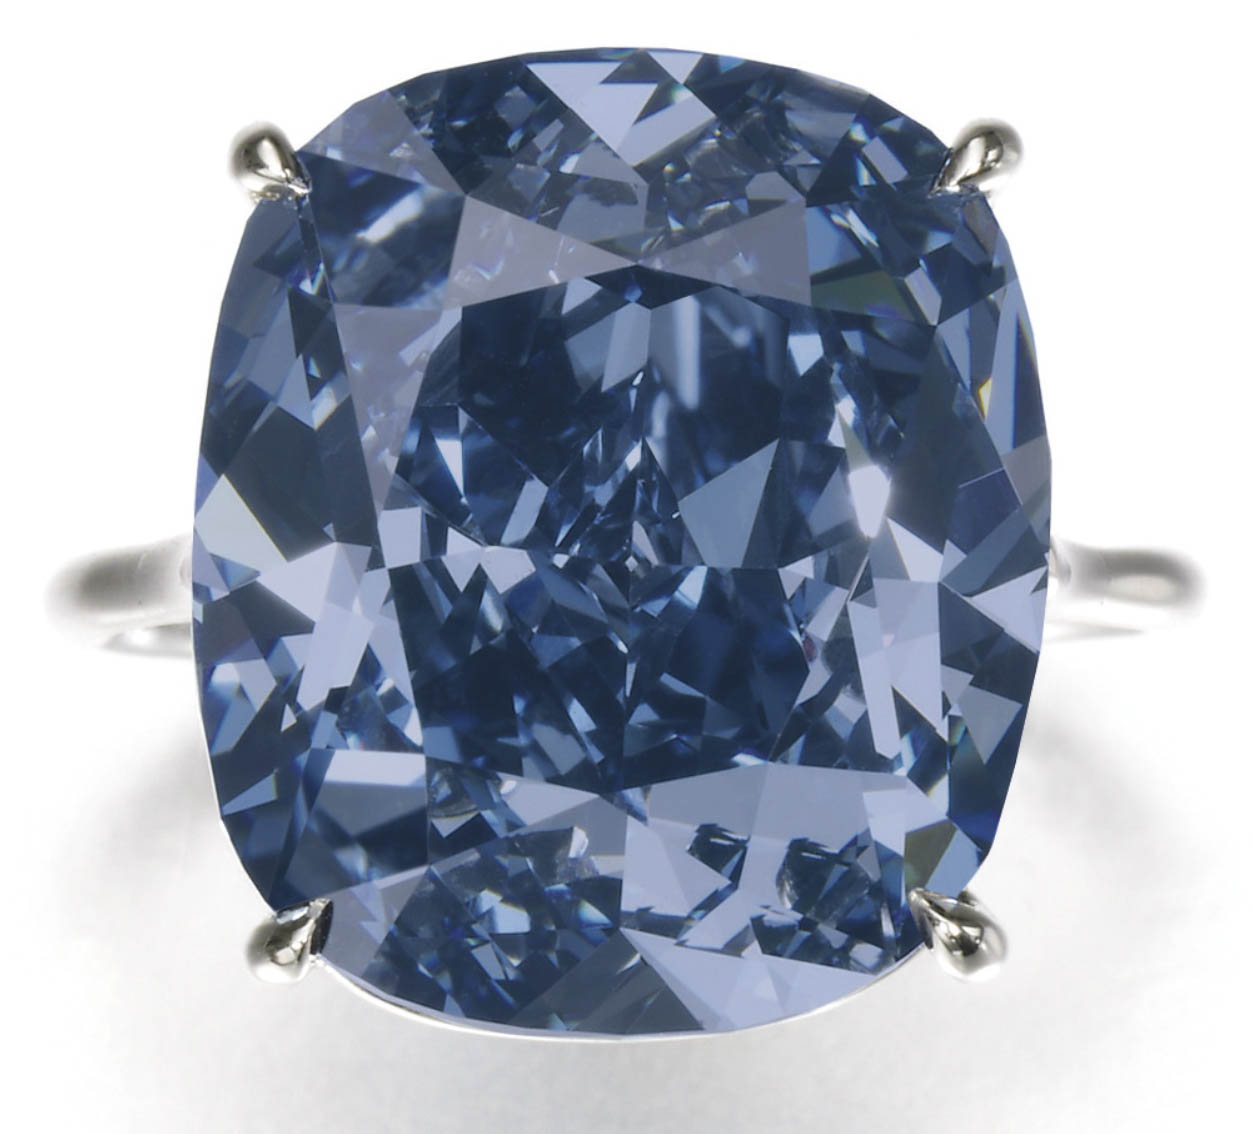 29 Vendome Bijoux Et Haute Joaillerie L Eblouissant Blue Moon Diamond A Ete Vendu 48 4 Millions De Dollars Par Cora International